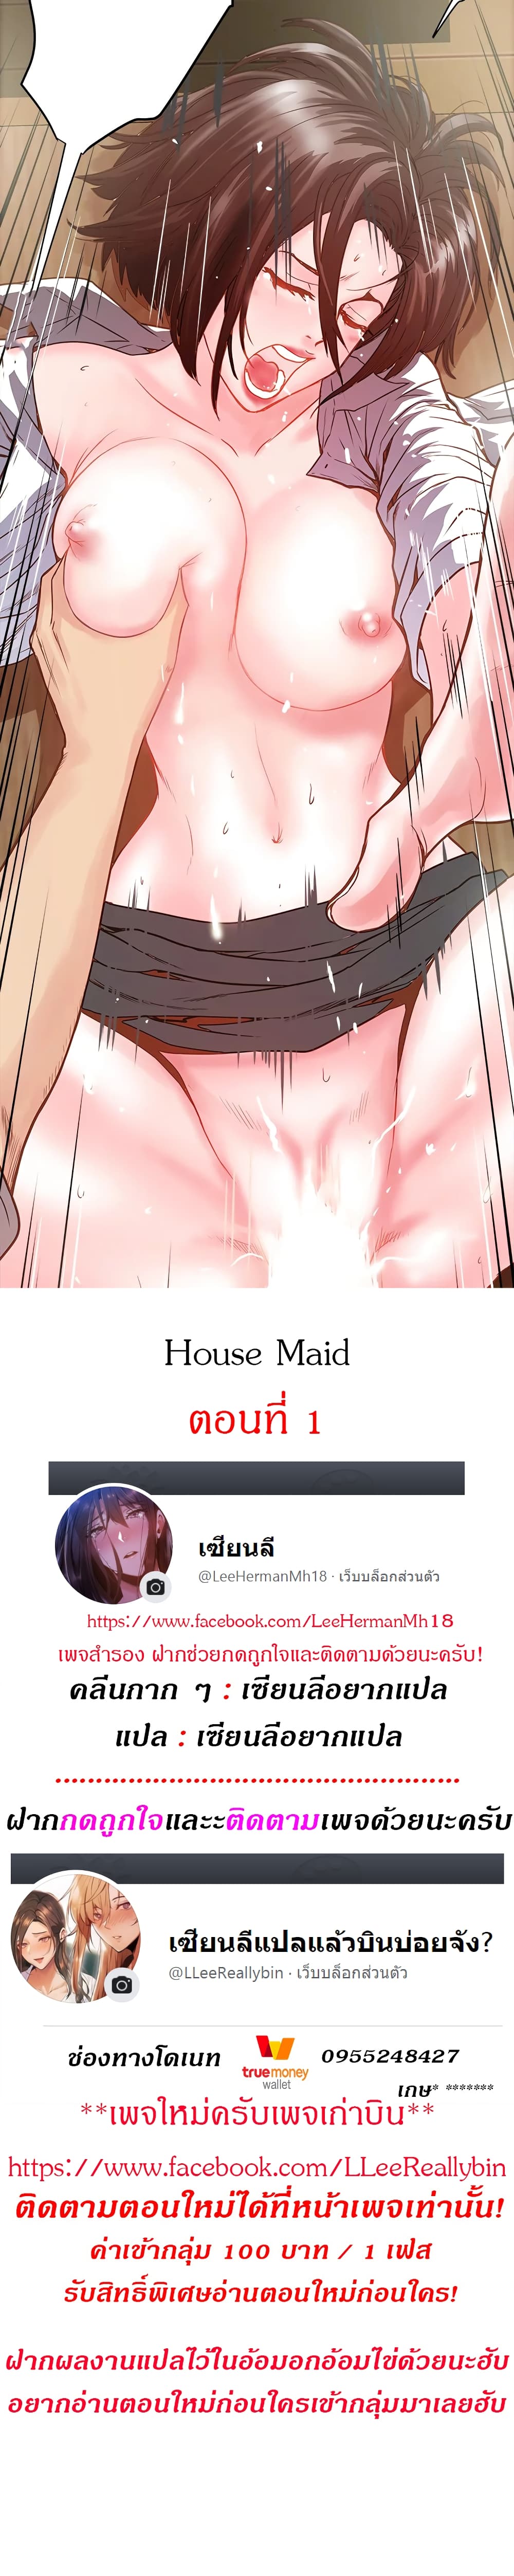 House Maid 1-1